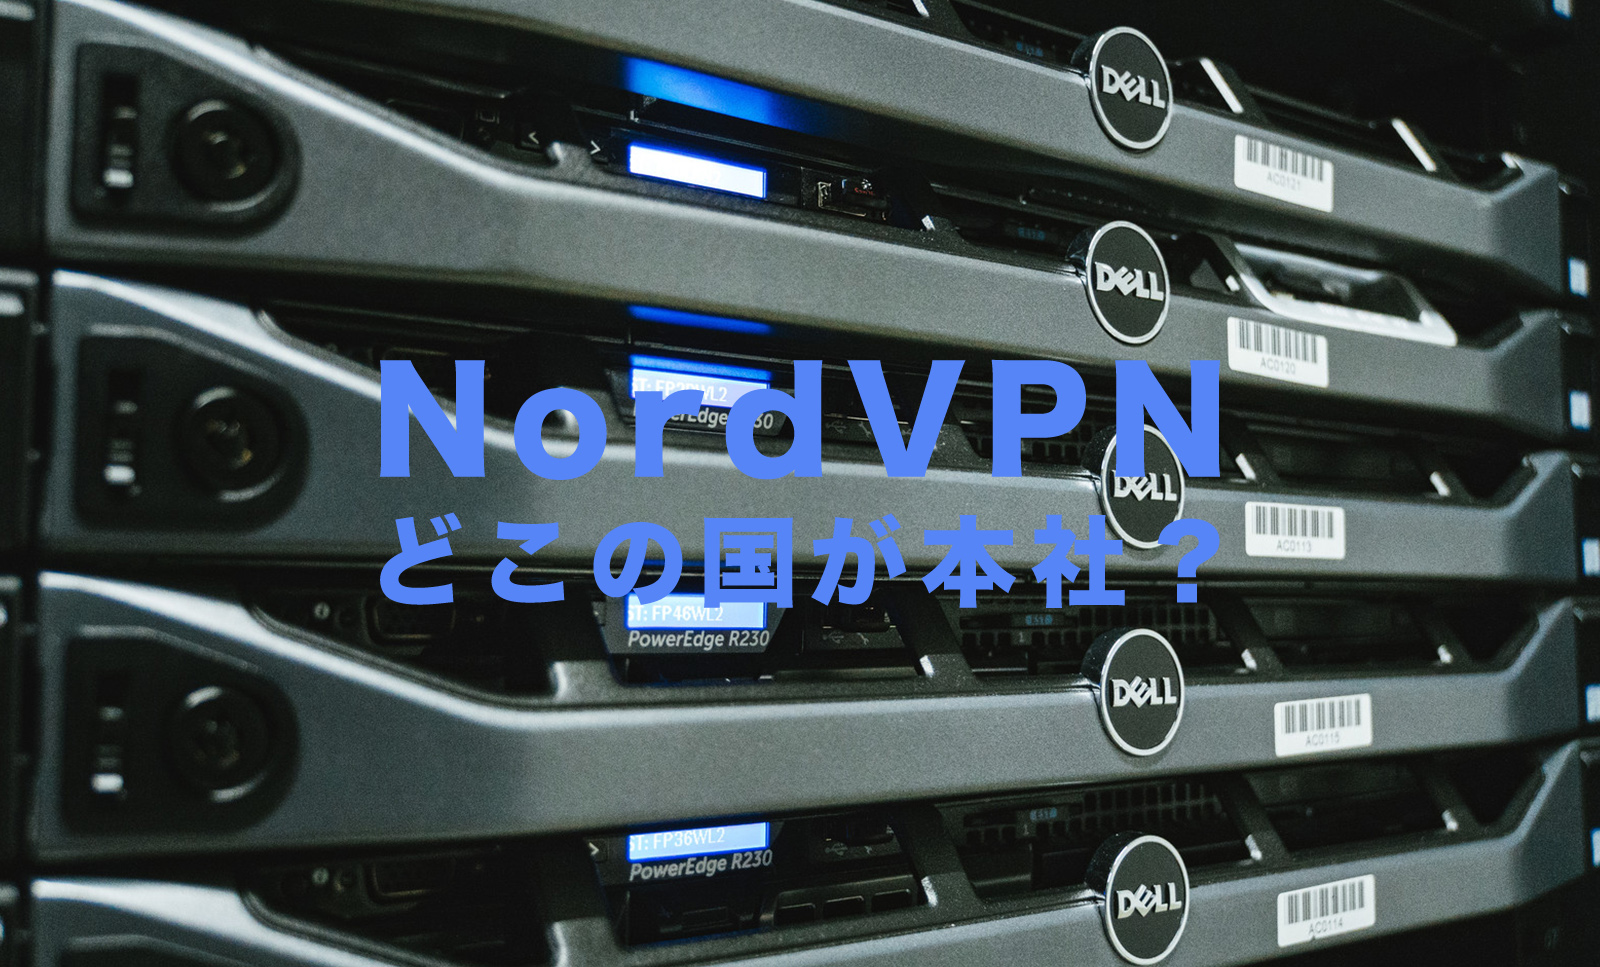 NordVPN(ノードVPN)はどこの国が本社のサービスなのか。のサムネイル画像